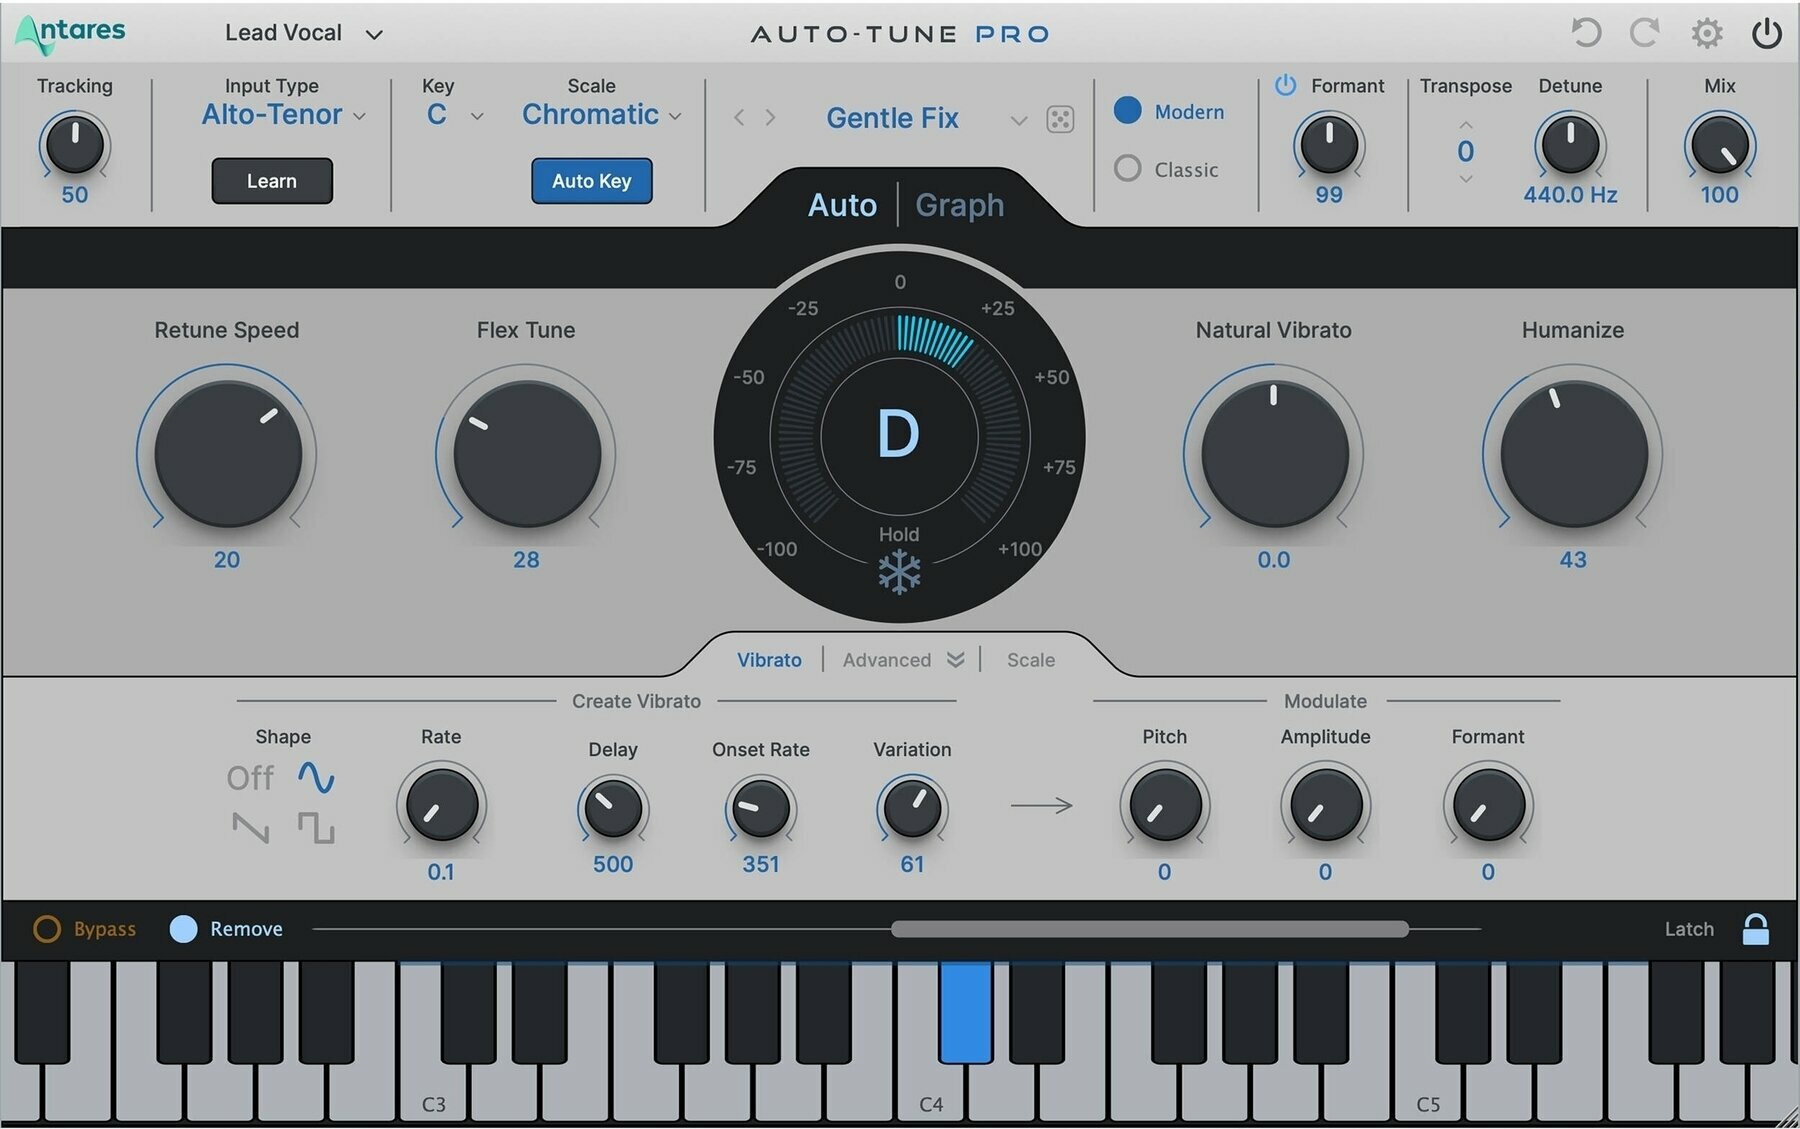 Logiciel de studio Instruments virtuels Antares Auto-Tune Pro X (Produit numérique)